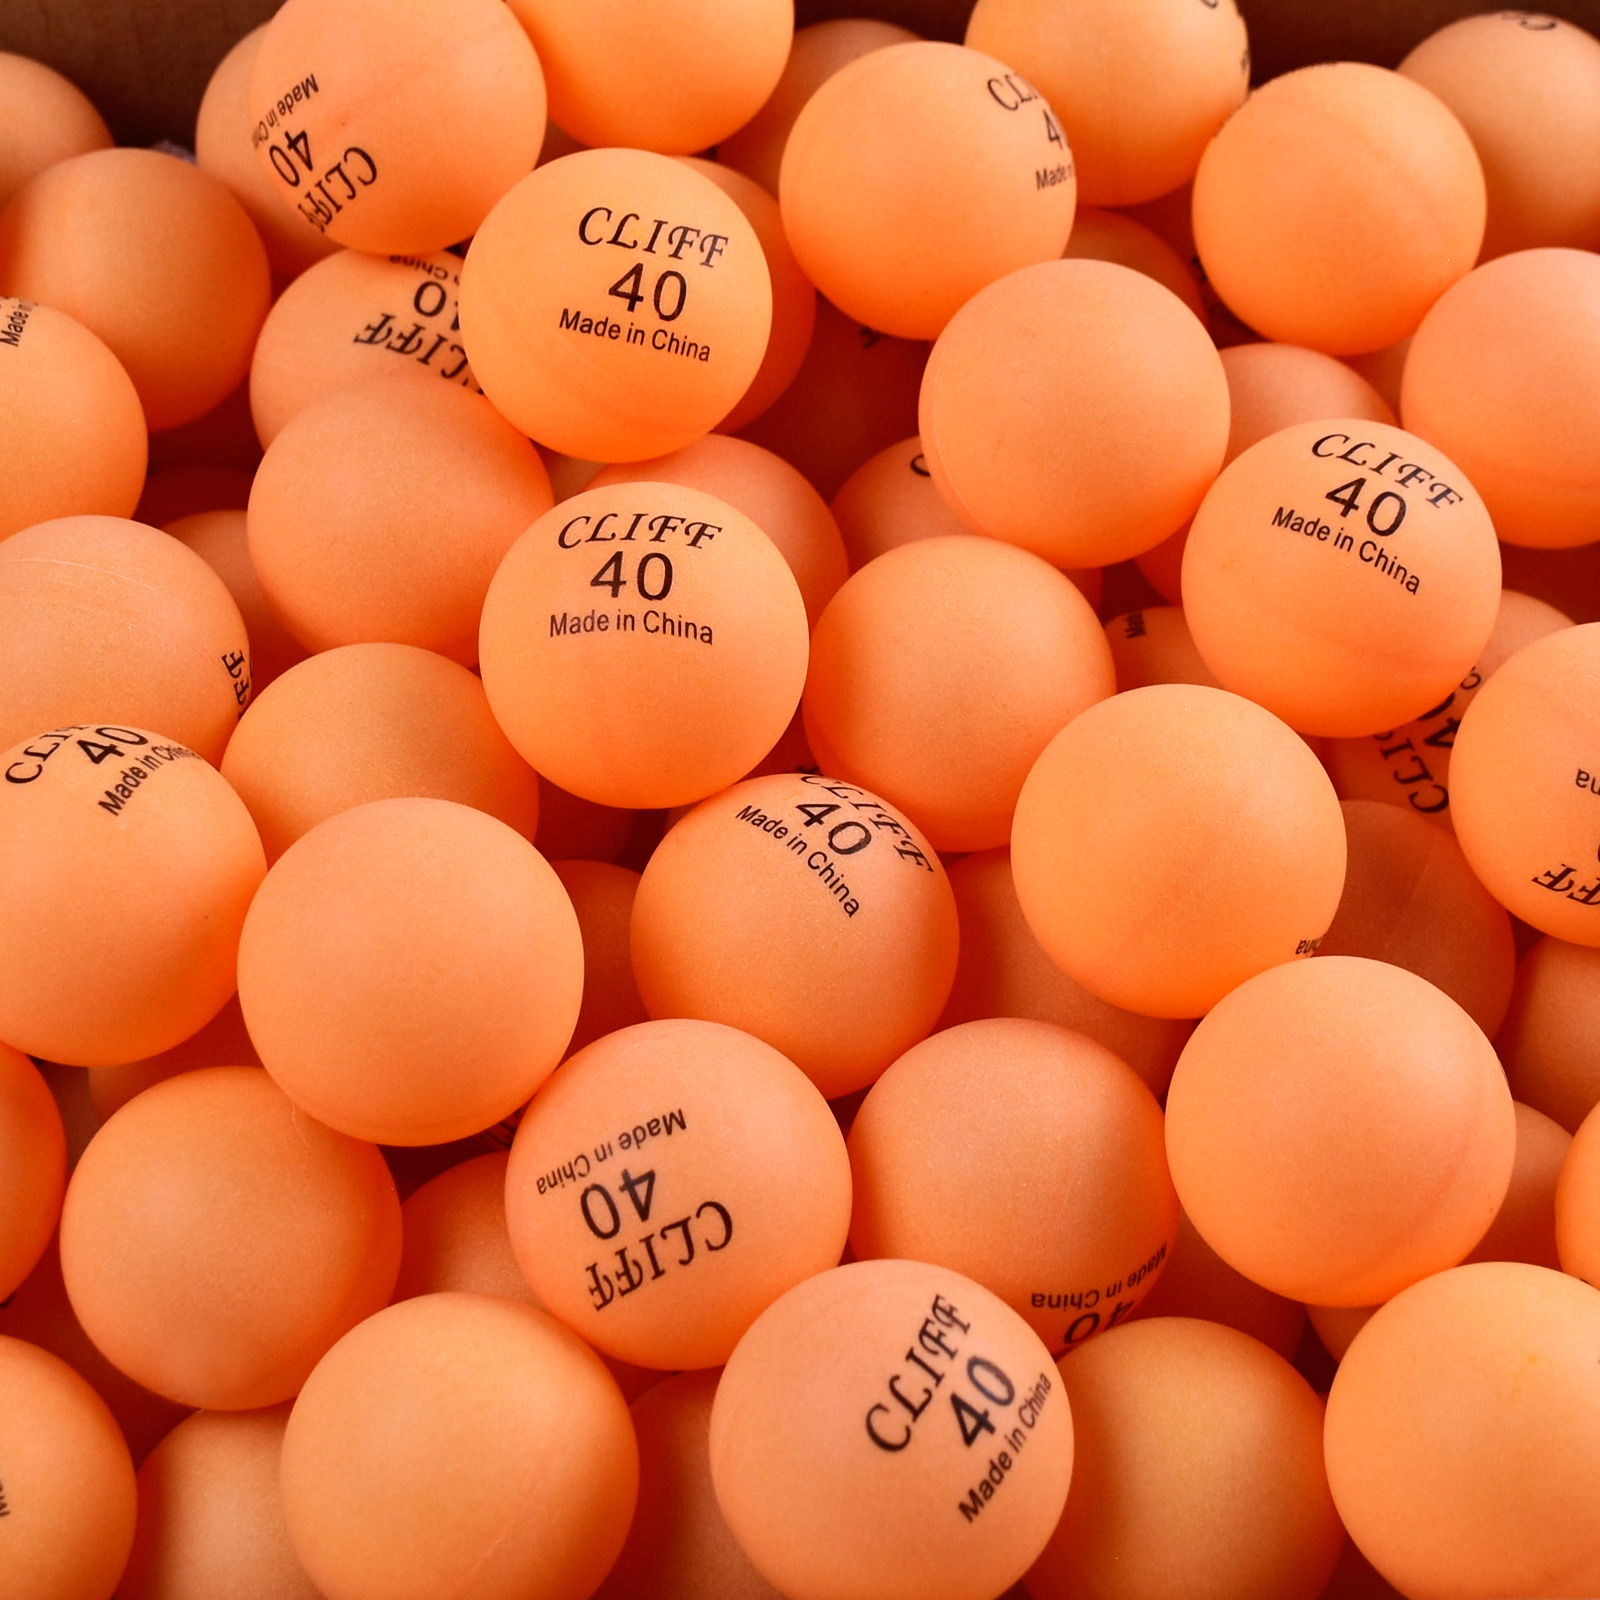 Мячи для настольного тенниса CLIFF, 40мм, пакет 144 штуки, оранжевые